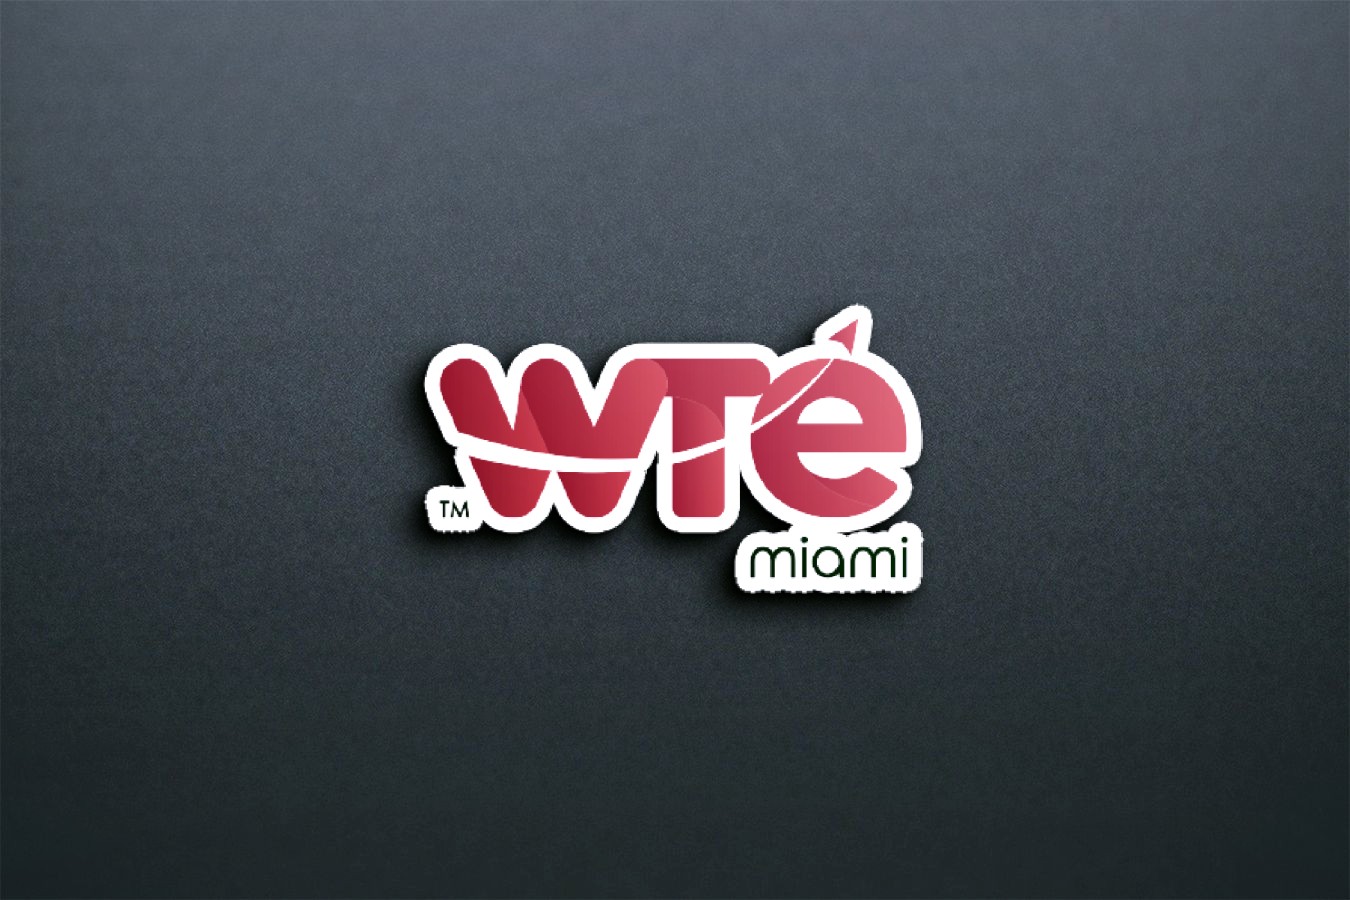 WTE Miami